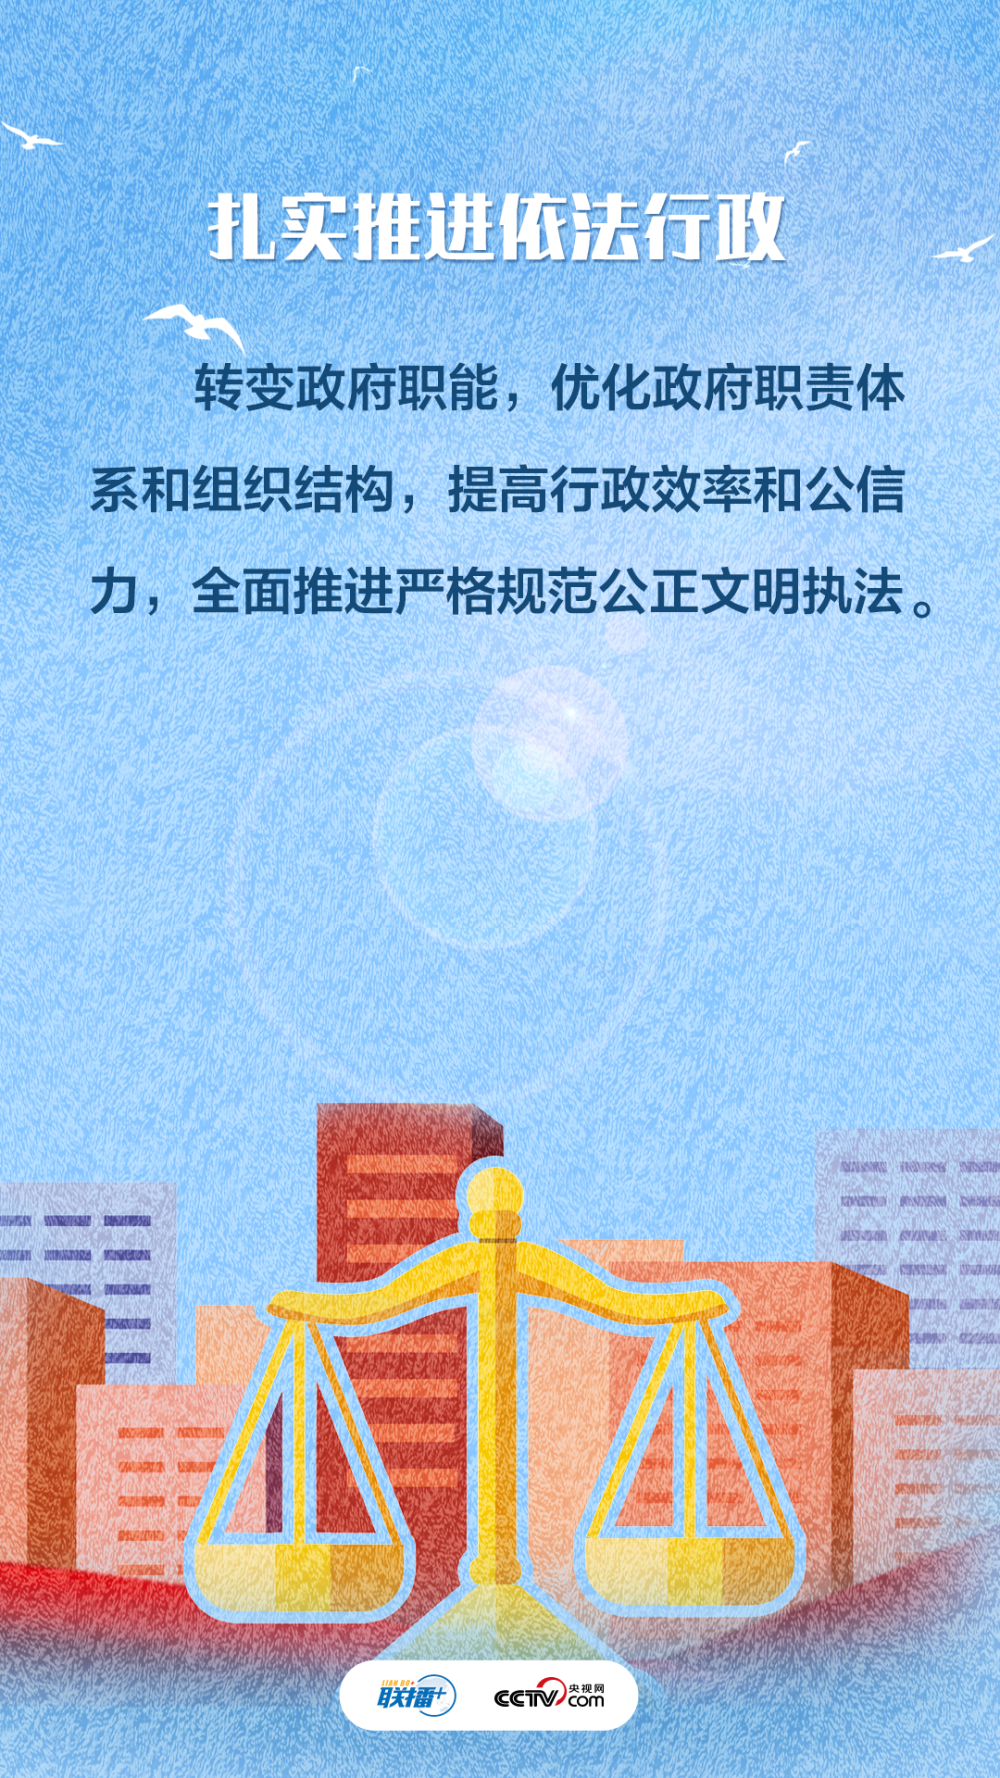 北京启动就业援助月活动将持续至2023年3月底aircourse爱课2023已更新(头条/微博)aircourse爱课